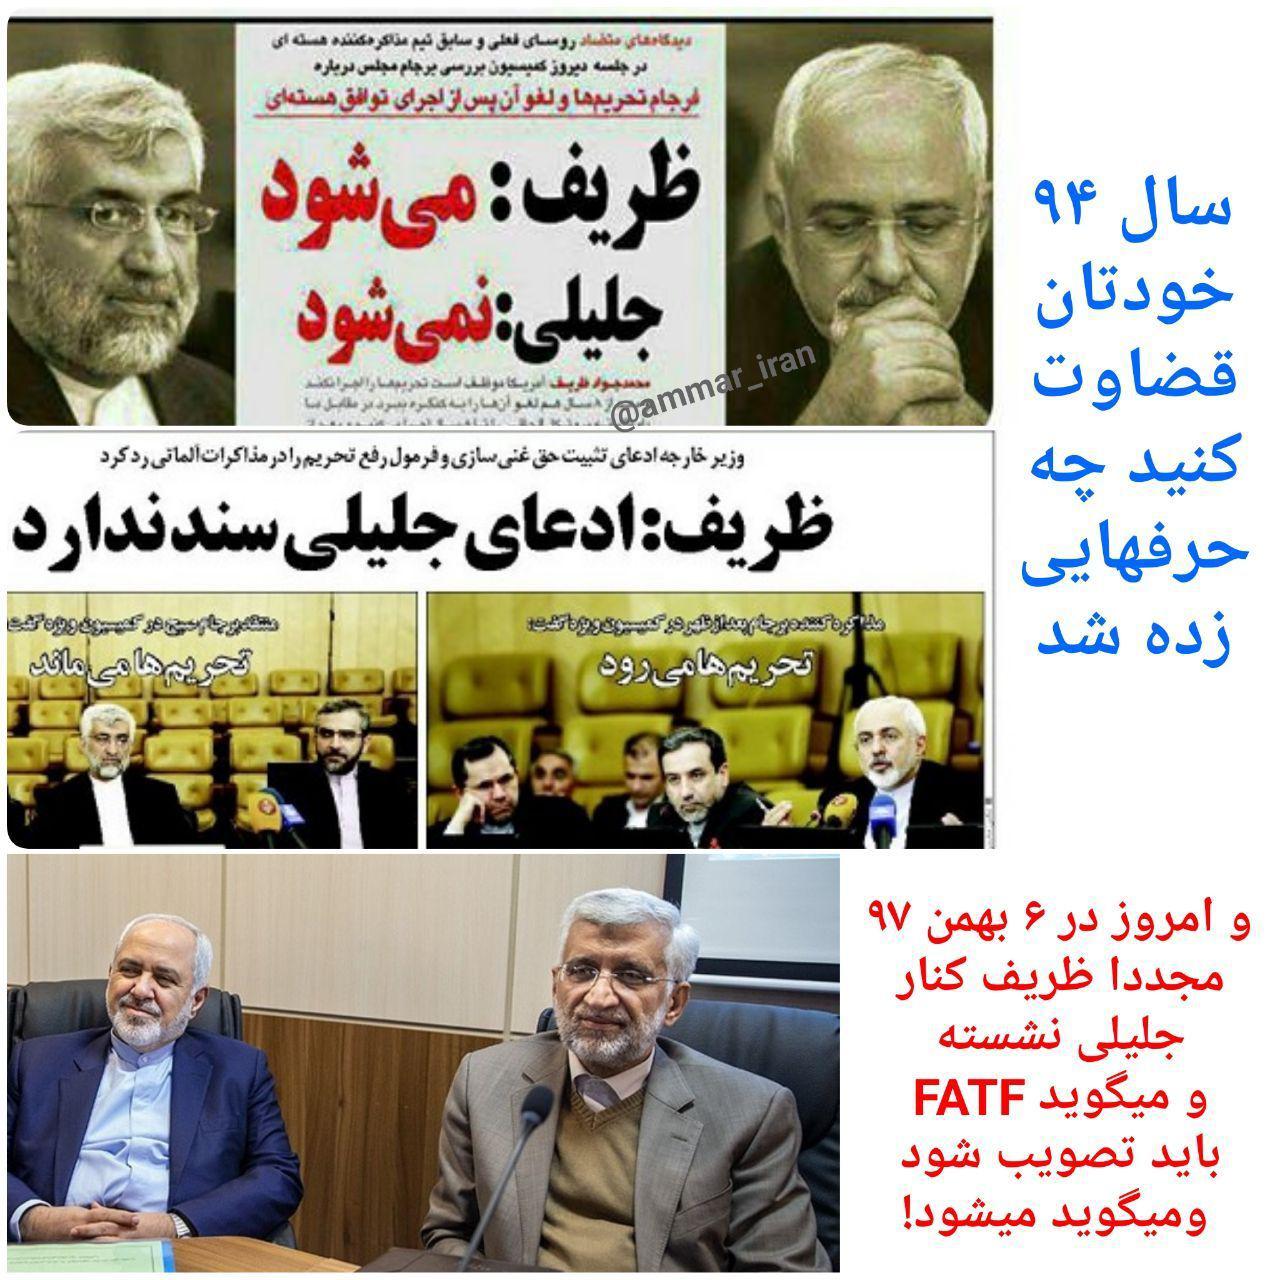 واکنش رسانه سعید جلیلی به عکس امروز مجمع تشخیص